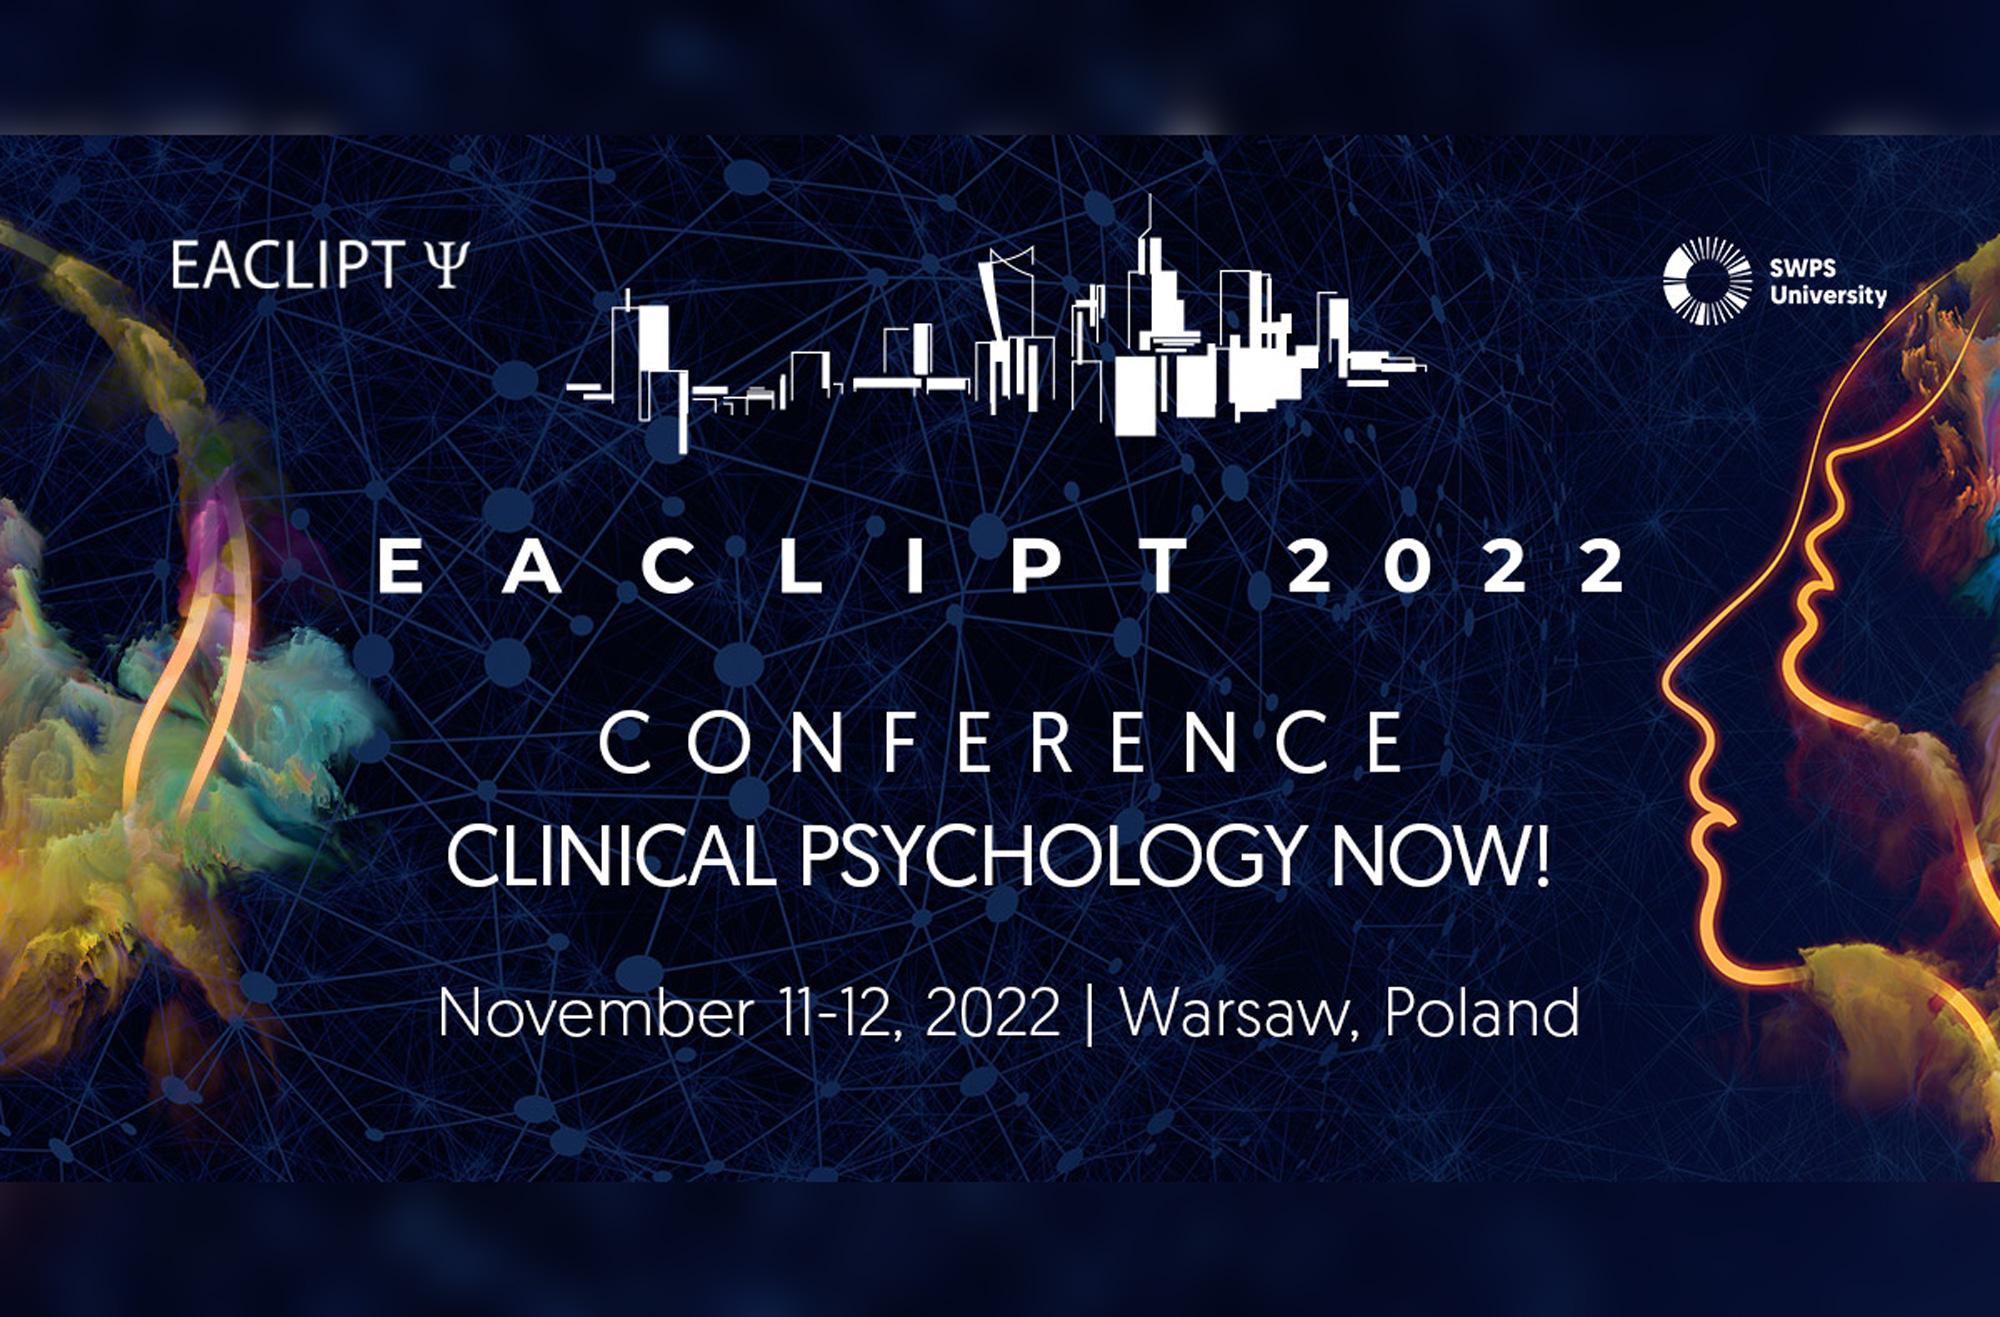 Międzynarodowa konferencja „Clinical psychology now!” na Uniwersytecie SWPS